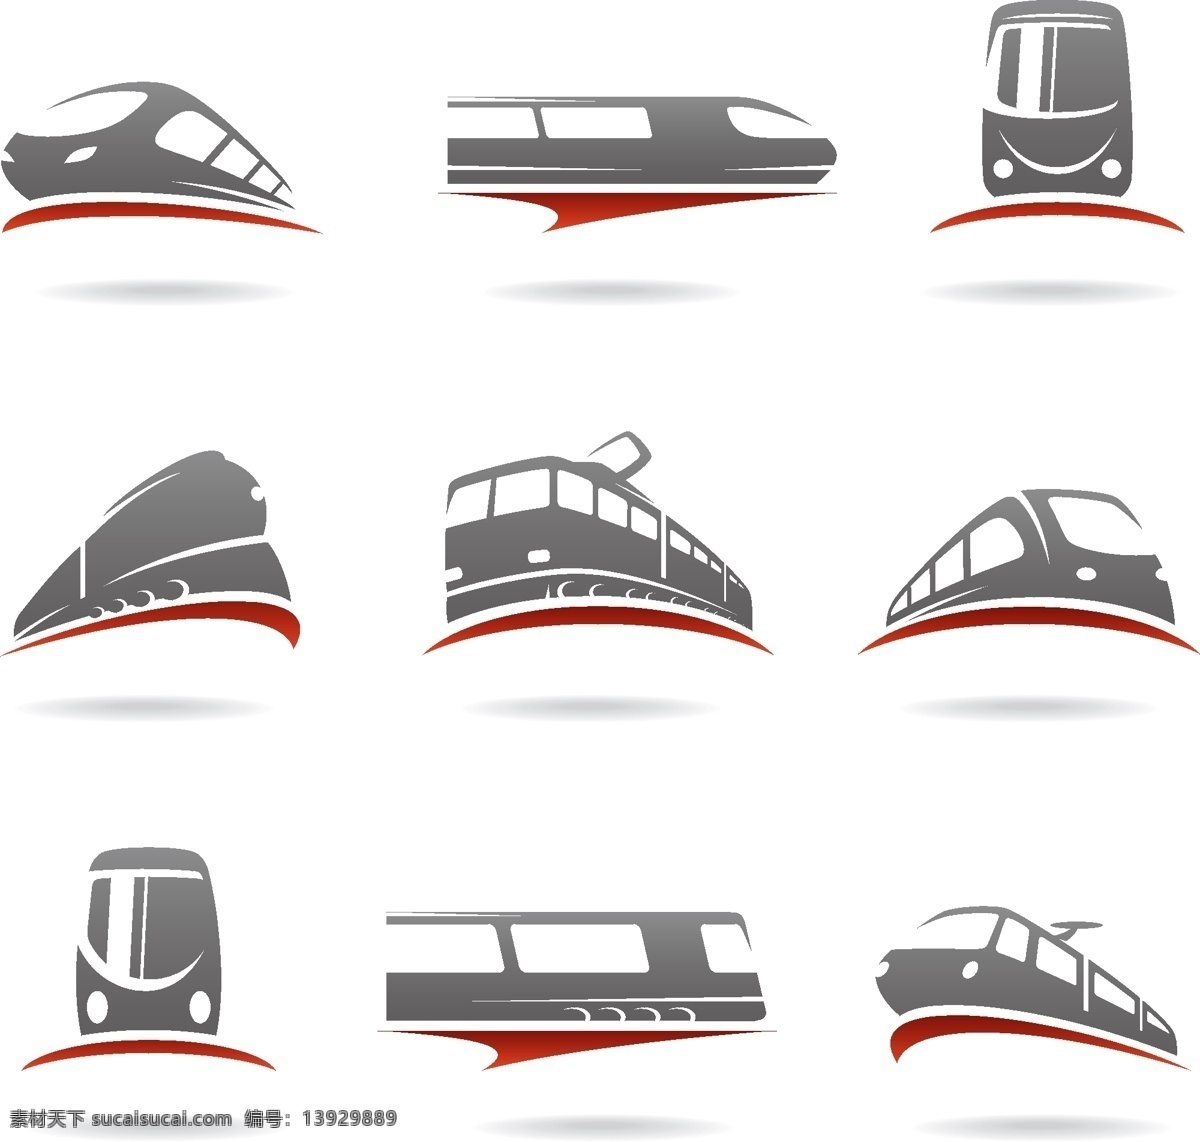 各种 角度 火车 剪影 合集 火车剪影 高铁剪影 火车标志剪影 矢量图 其他矢量图